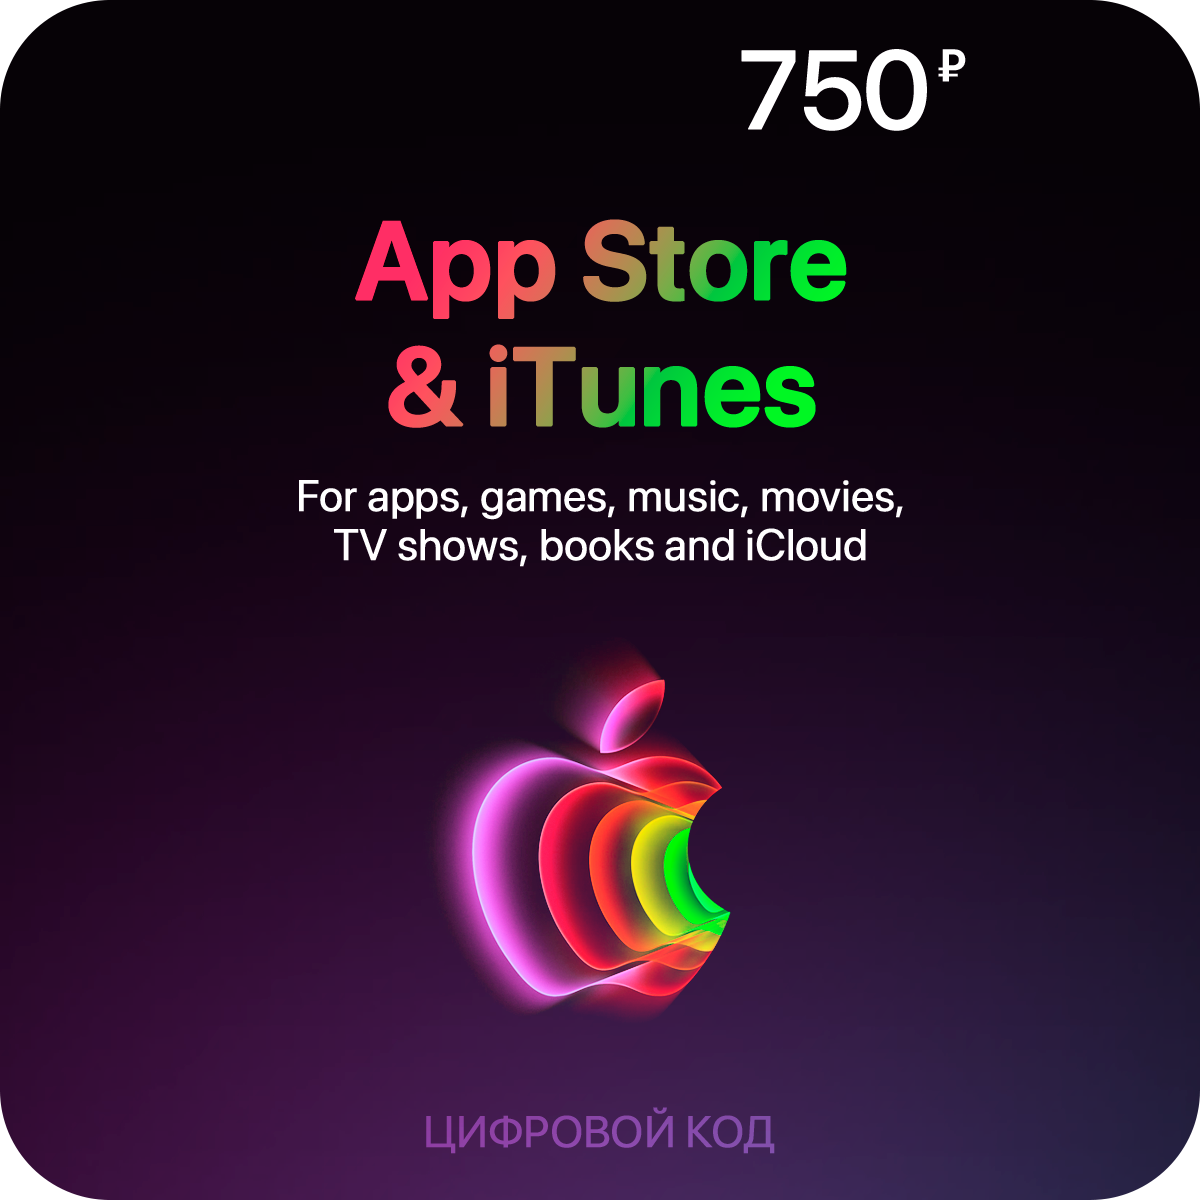 Пополнение счета App Store & iTunes (750 рублей)